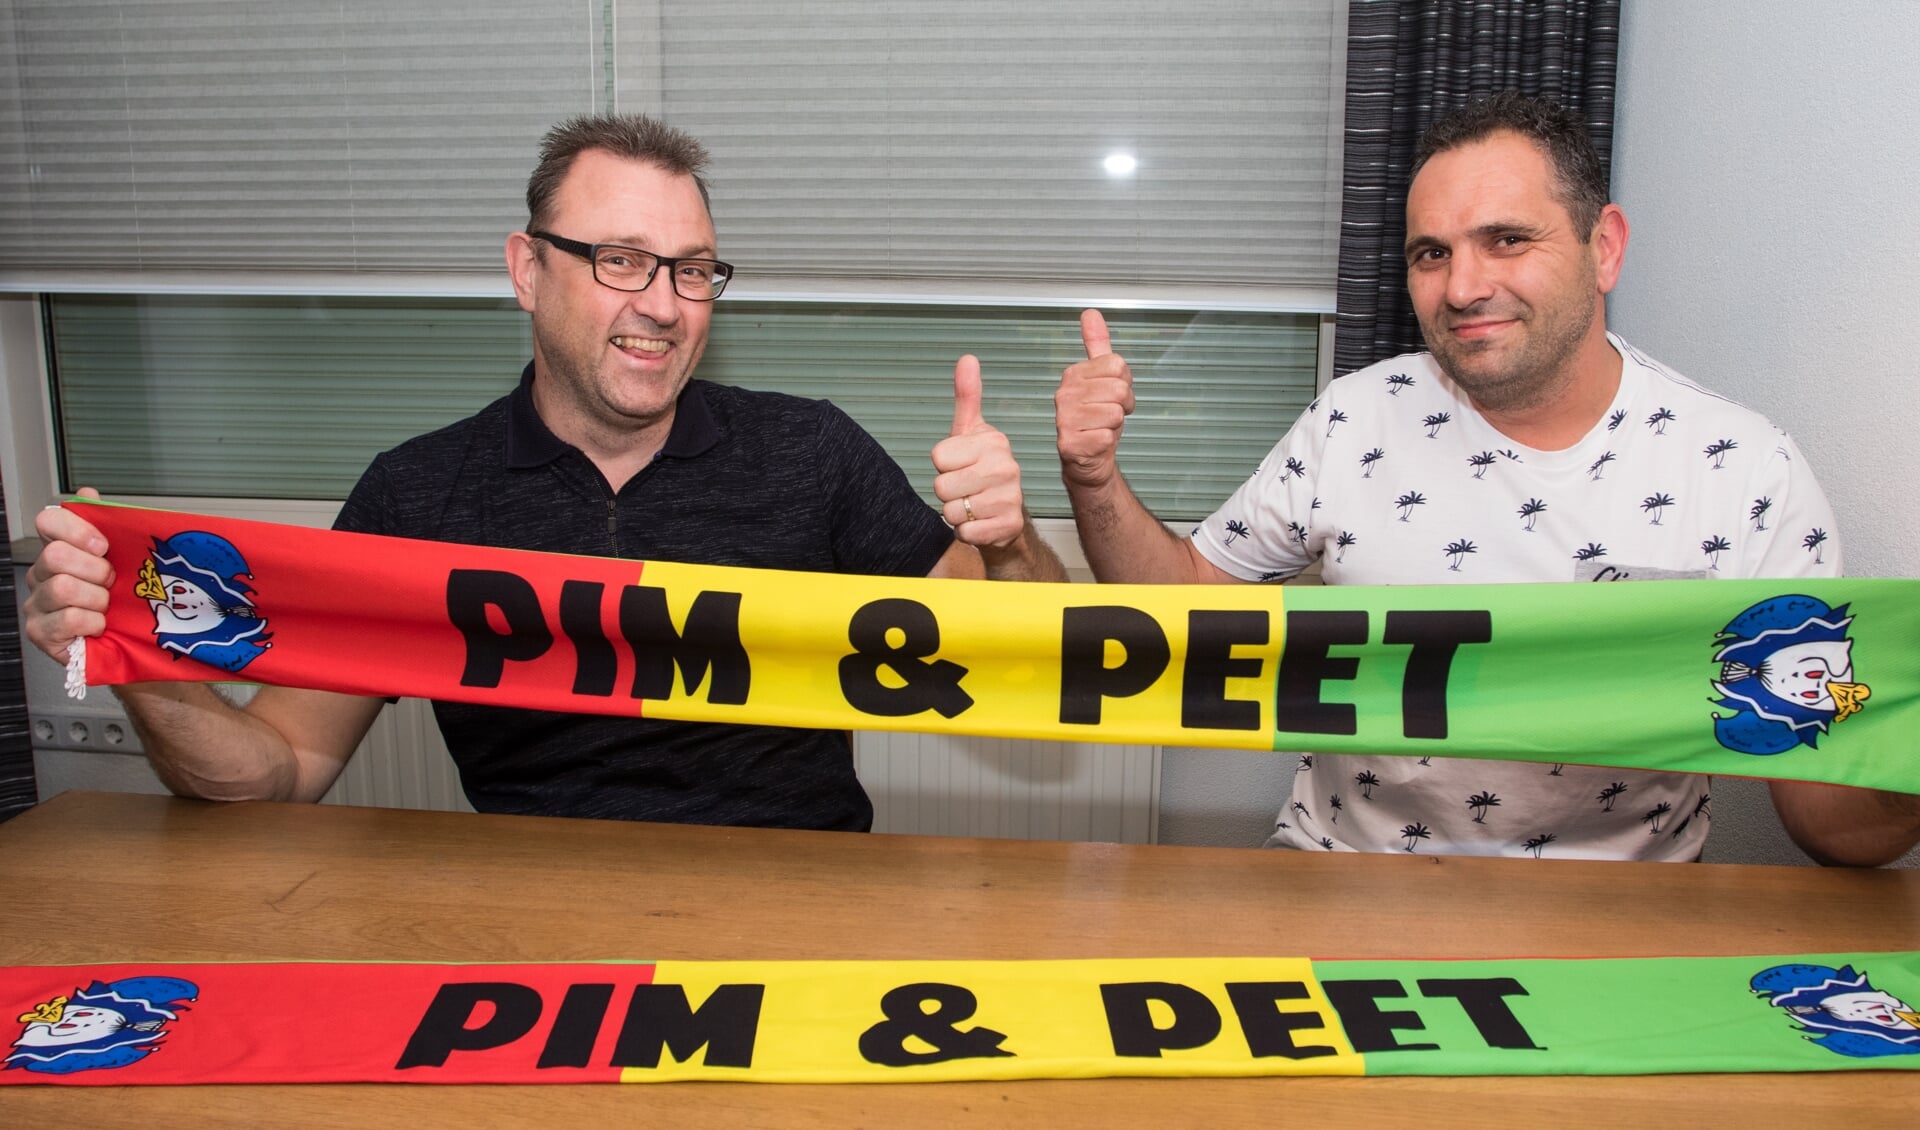 Het duo Pim & Peet is ook dit jaar present tijdens het liedjesfestival in Venray.